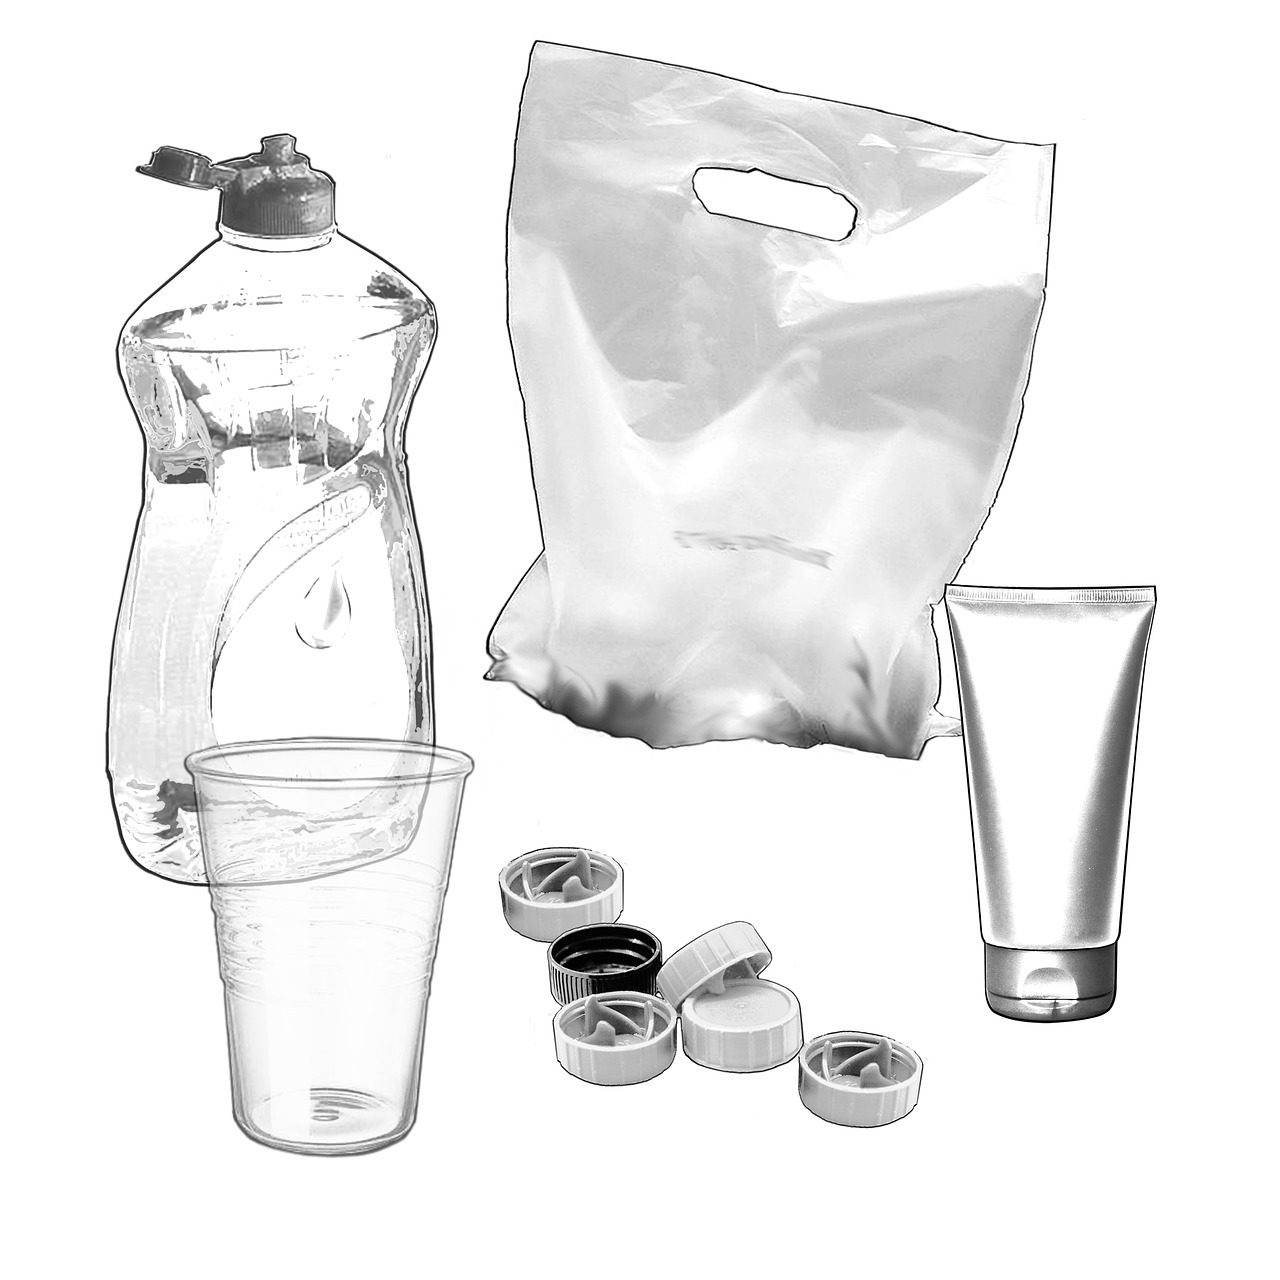 Fotografija prikazuje različite uporabne predmete načinjene od prozirne plastike - čaše, čepove, tube, boce i vrećice.